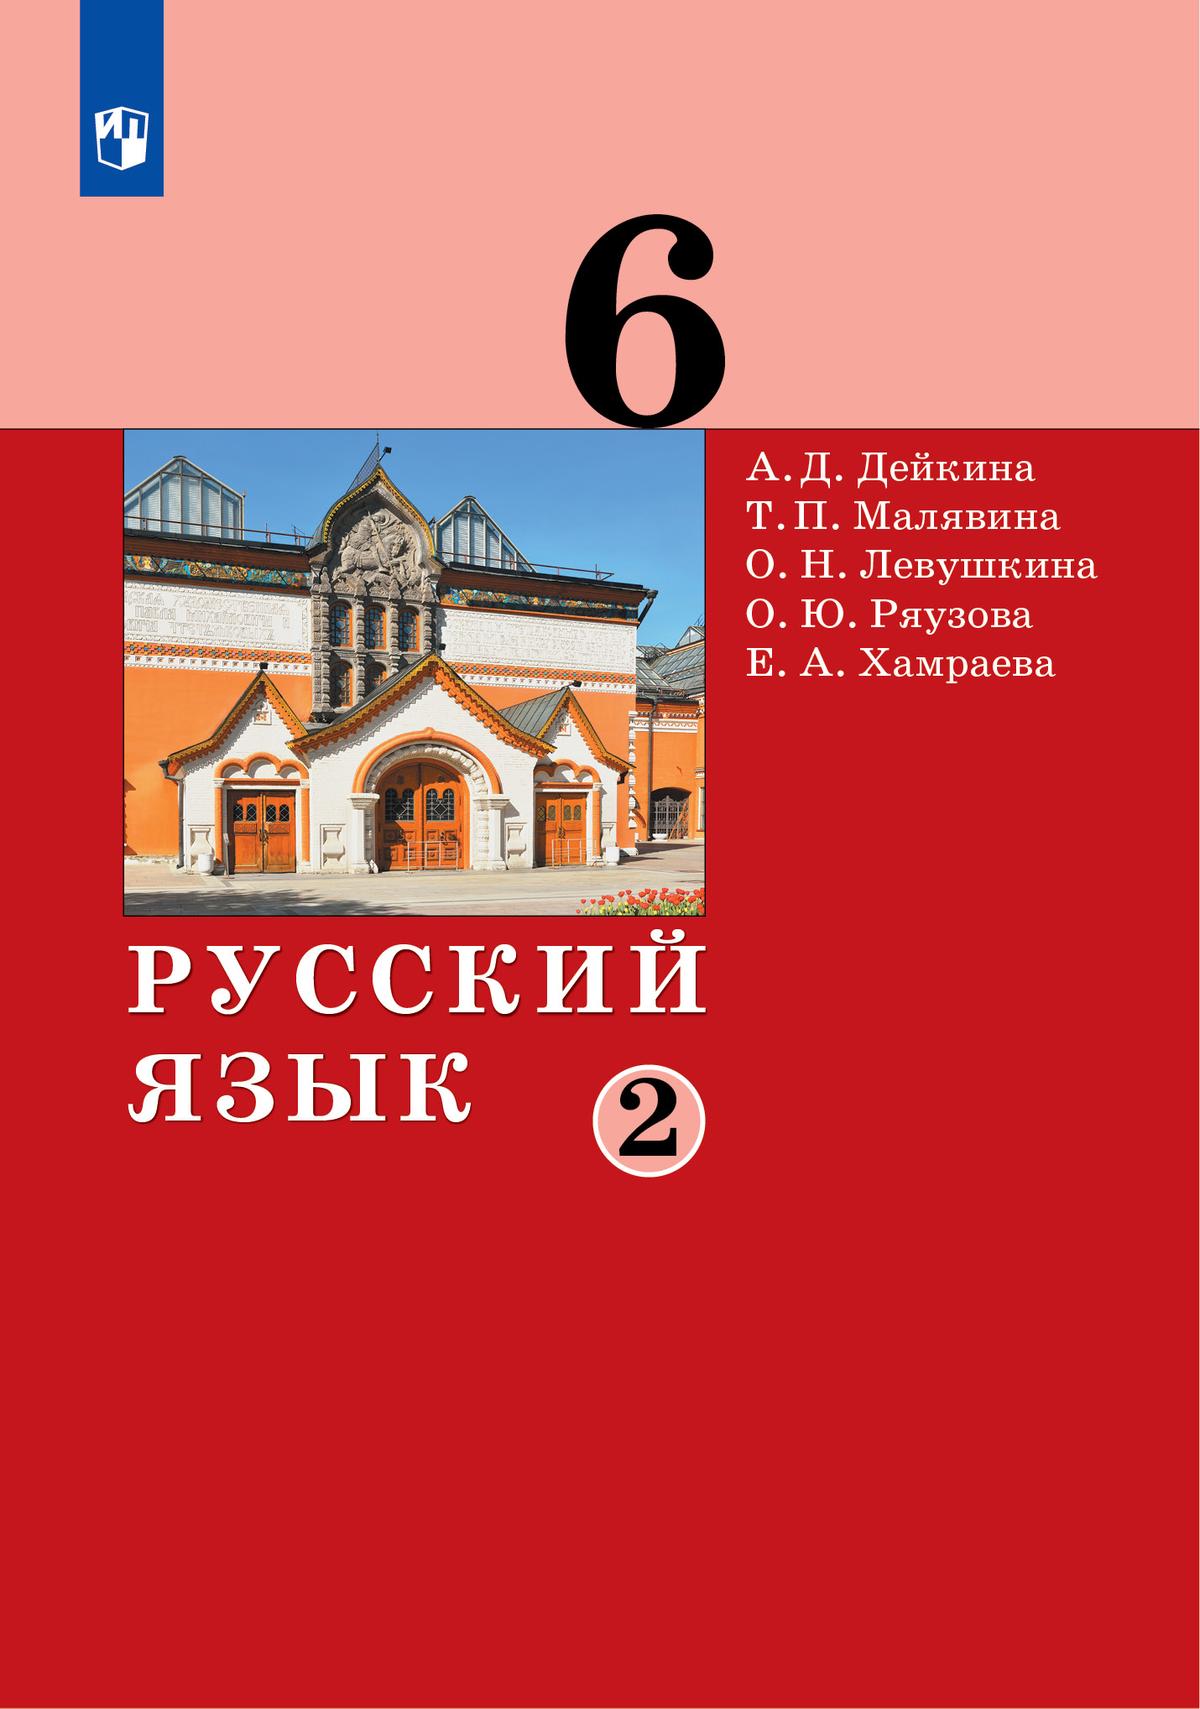 Русский язык. 6 класс. Электронная форма учебника. 2 ч. Часть 2 1